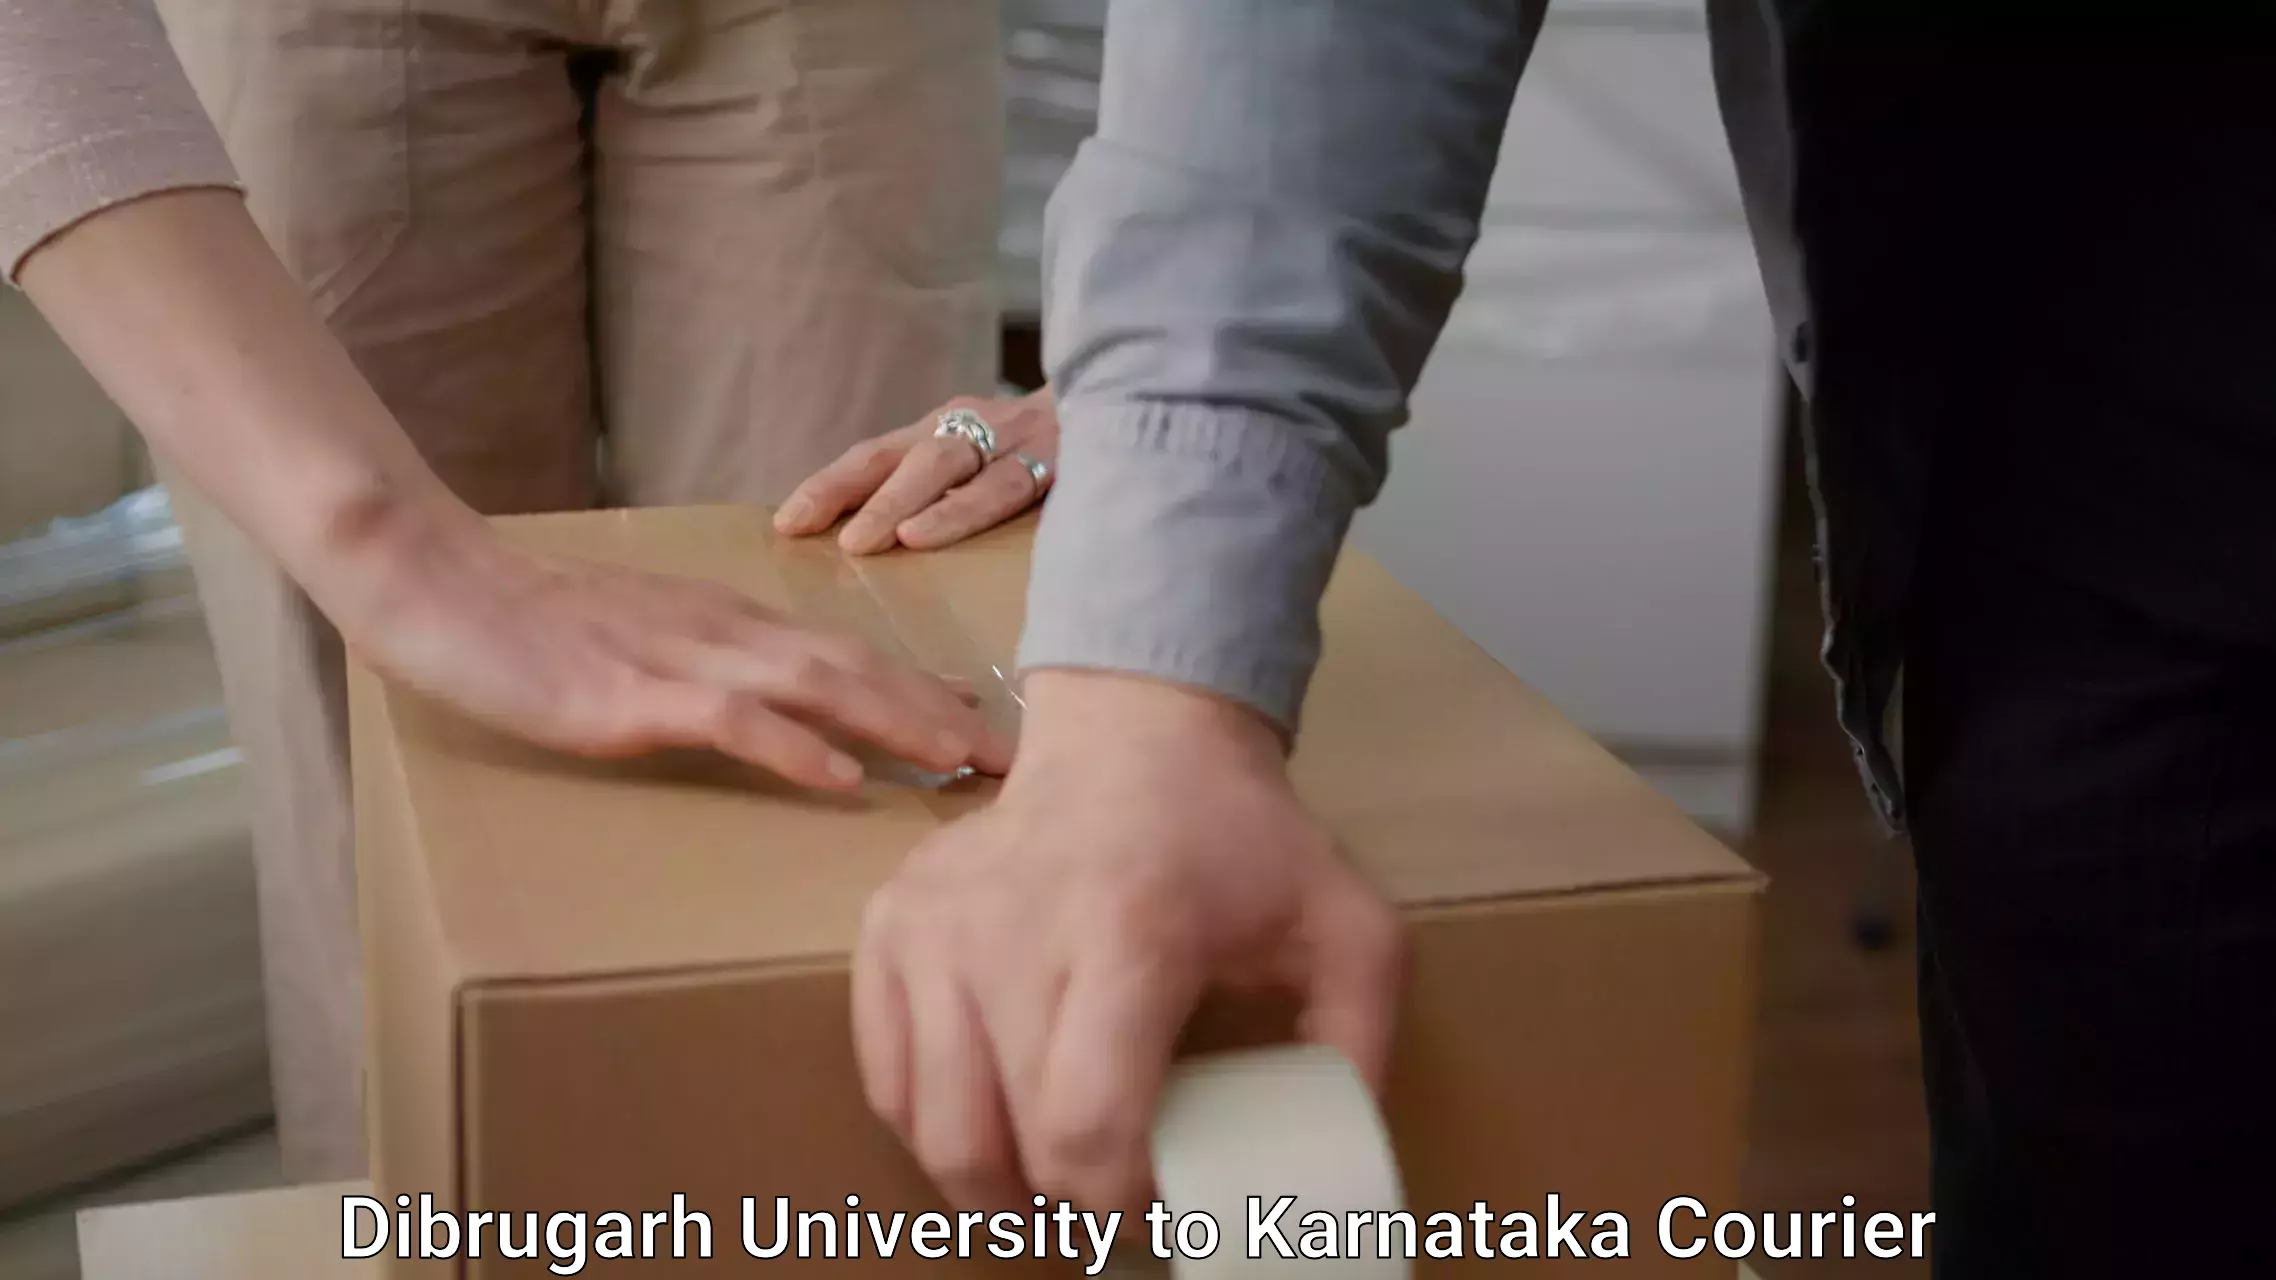 Furniture moving experts Dibrugarh University to Basavakalyan